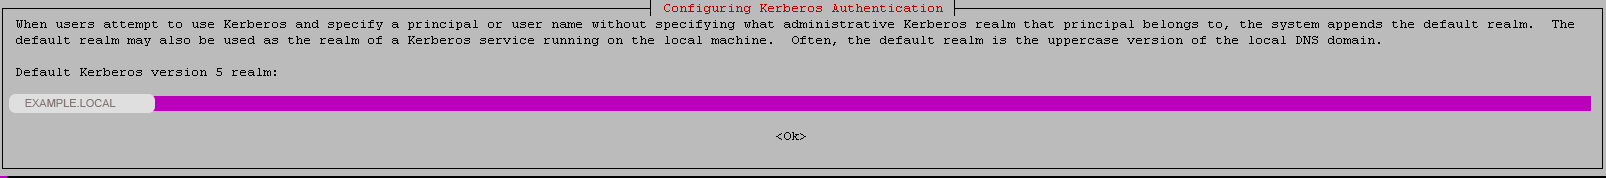 join_activedirectory_ubuntu_debian_kerberos_auth_en.png